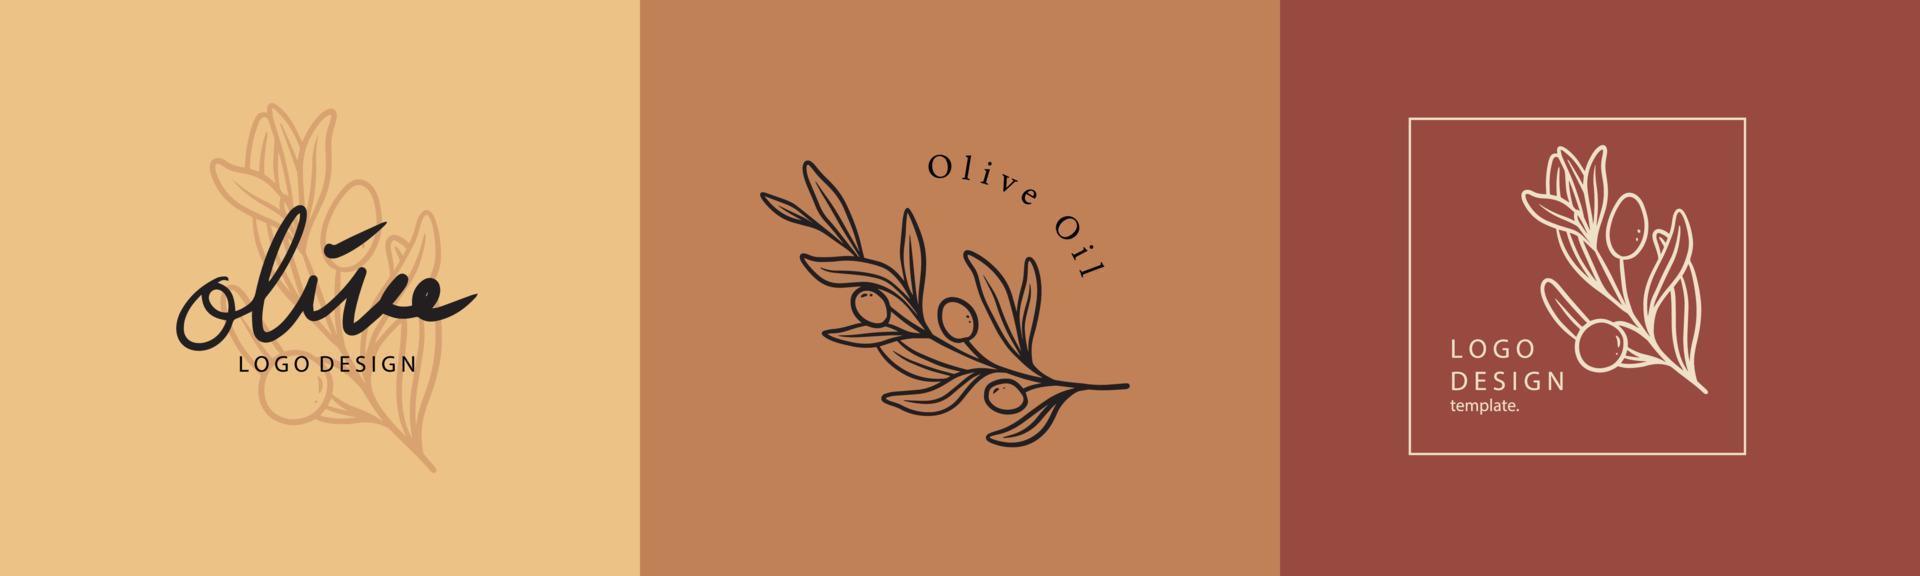 minimalistische olivenpflanzenabzeichen und logo. stempeletiketten für tag mit isolierter olivenpflanze. vintage handgezeichnetes natürliches zeichen für tag-produkt in einfachem rustikalem design. Branding-Logo-Design-Vorlage vektor